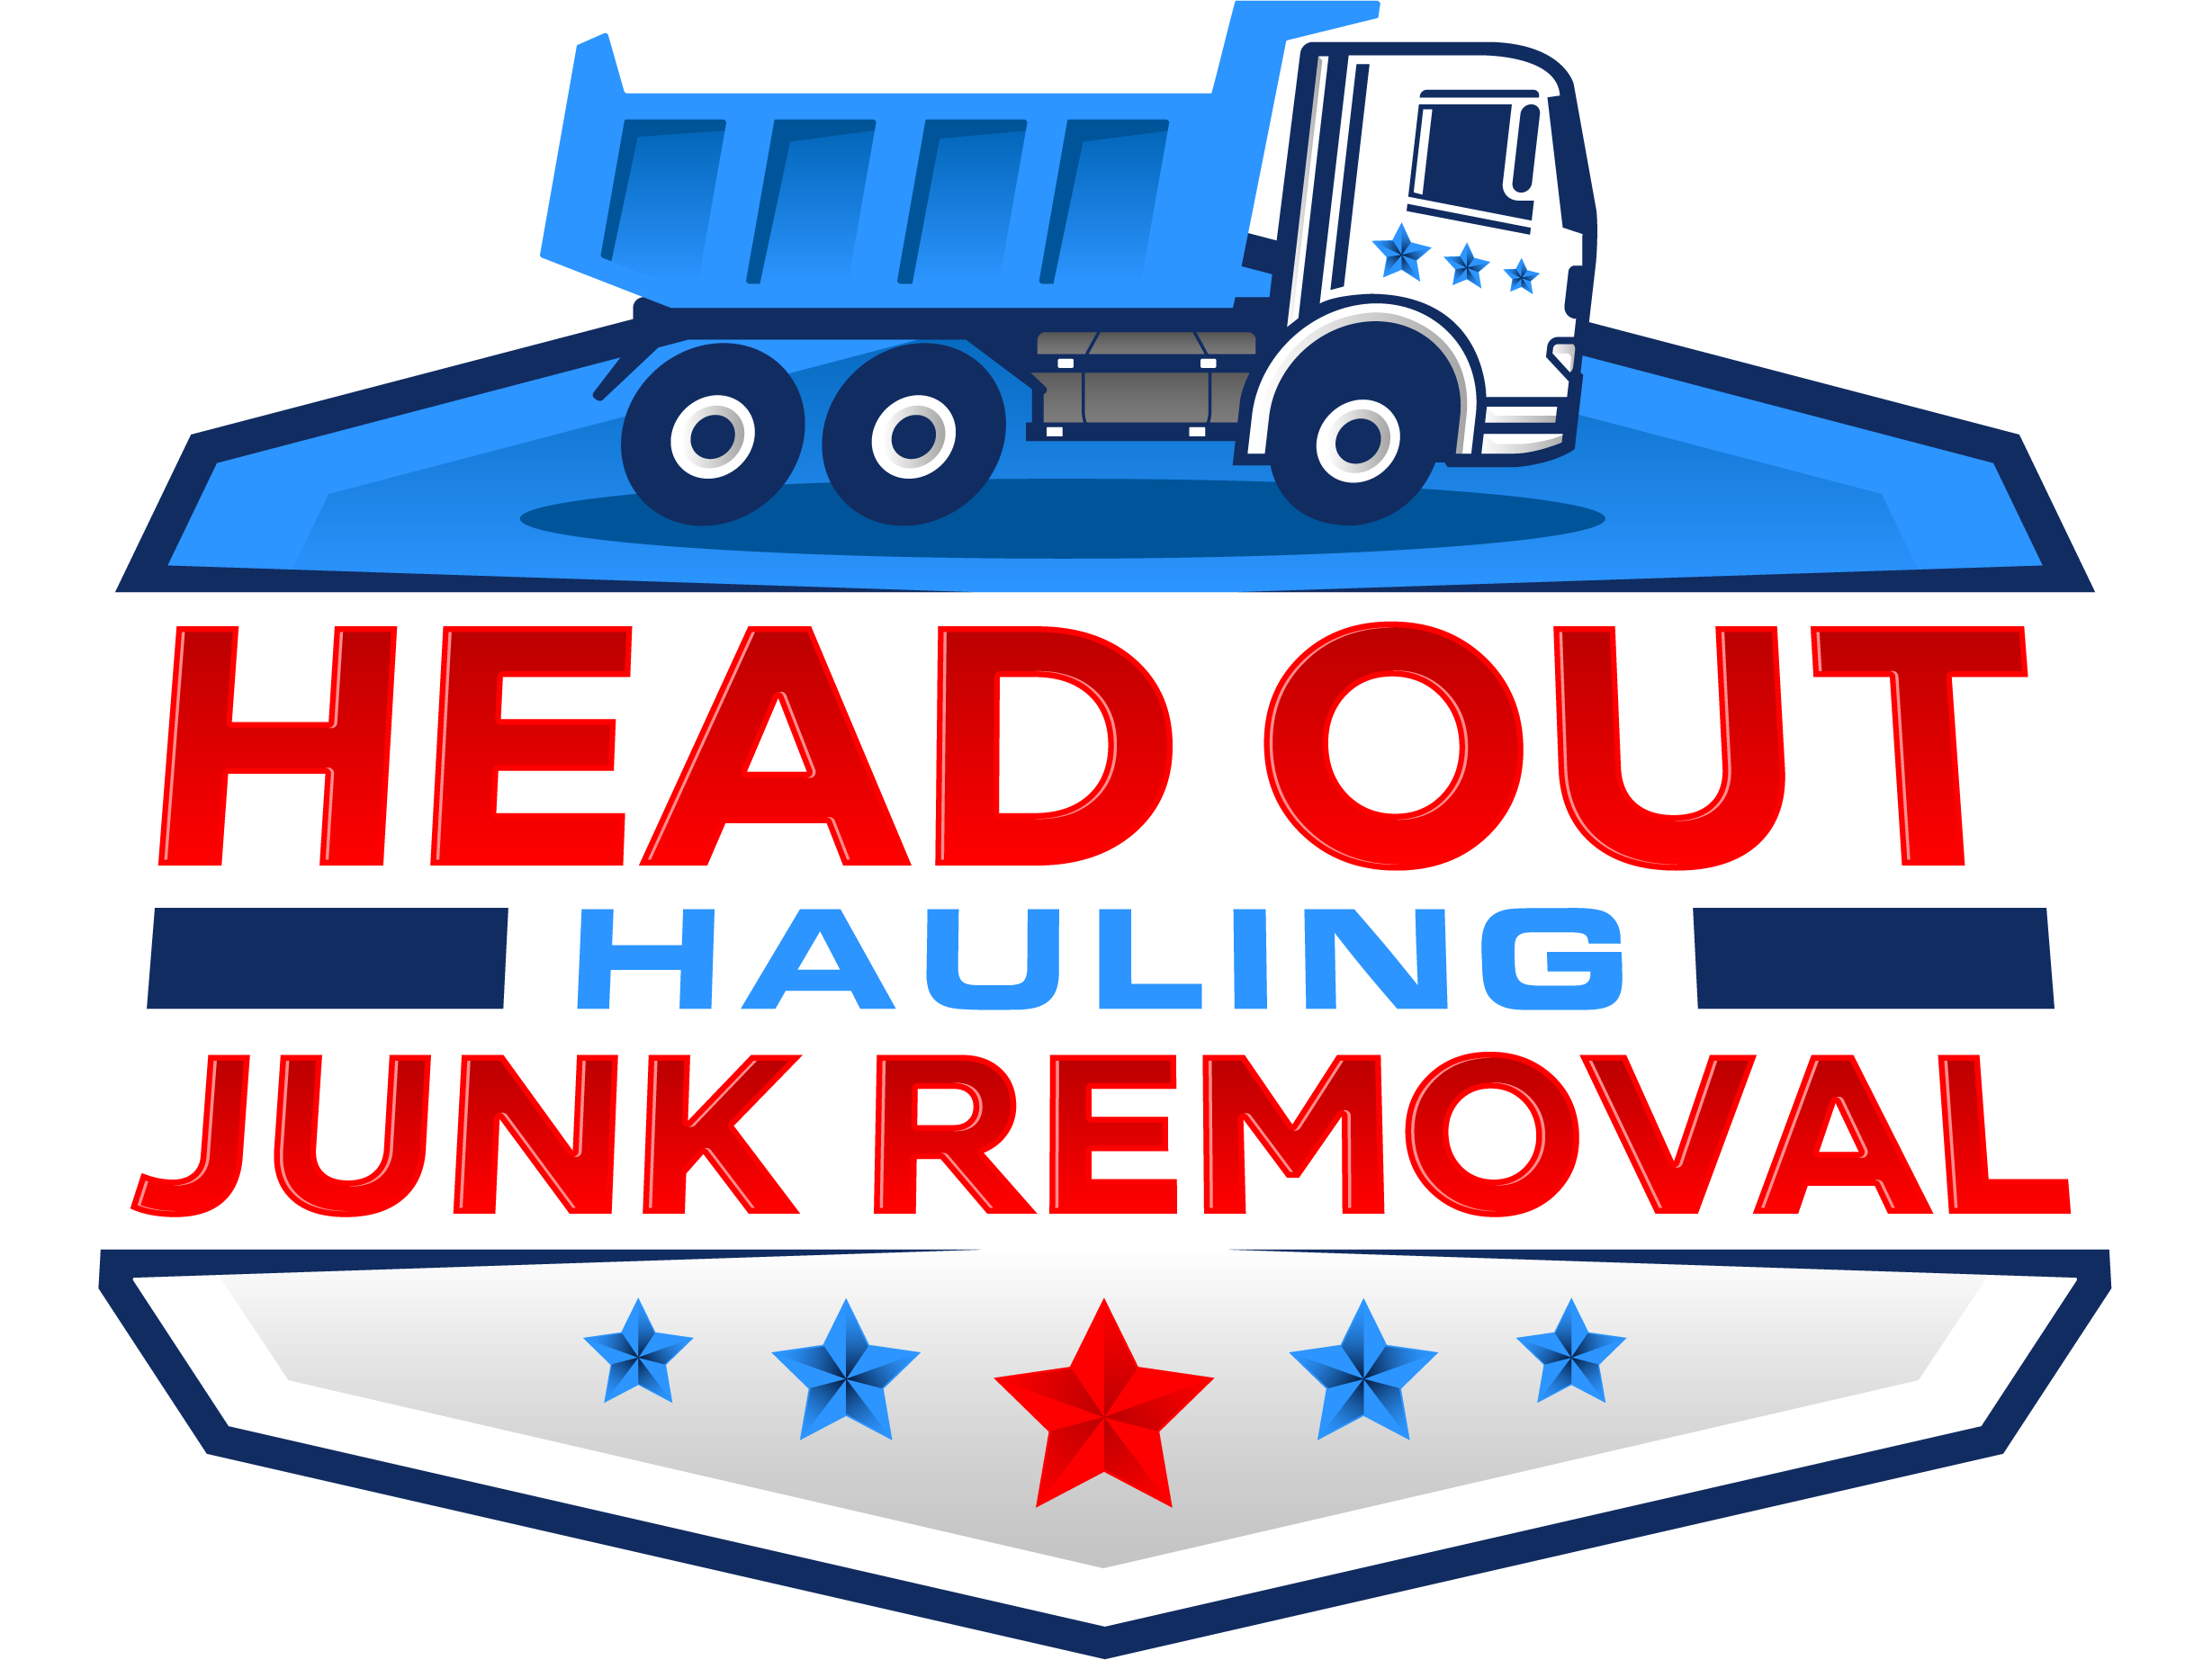 Headout-junk-removal-logo